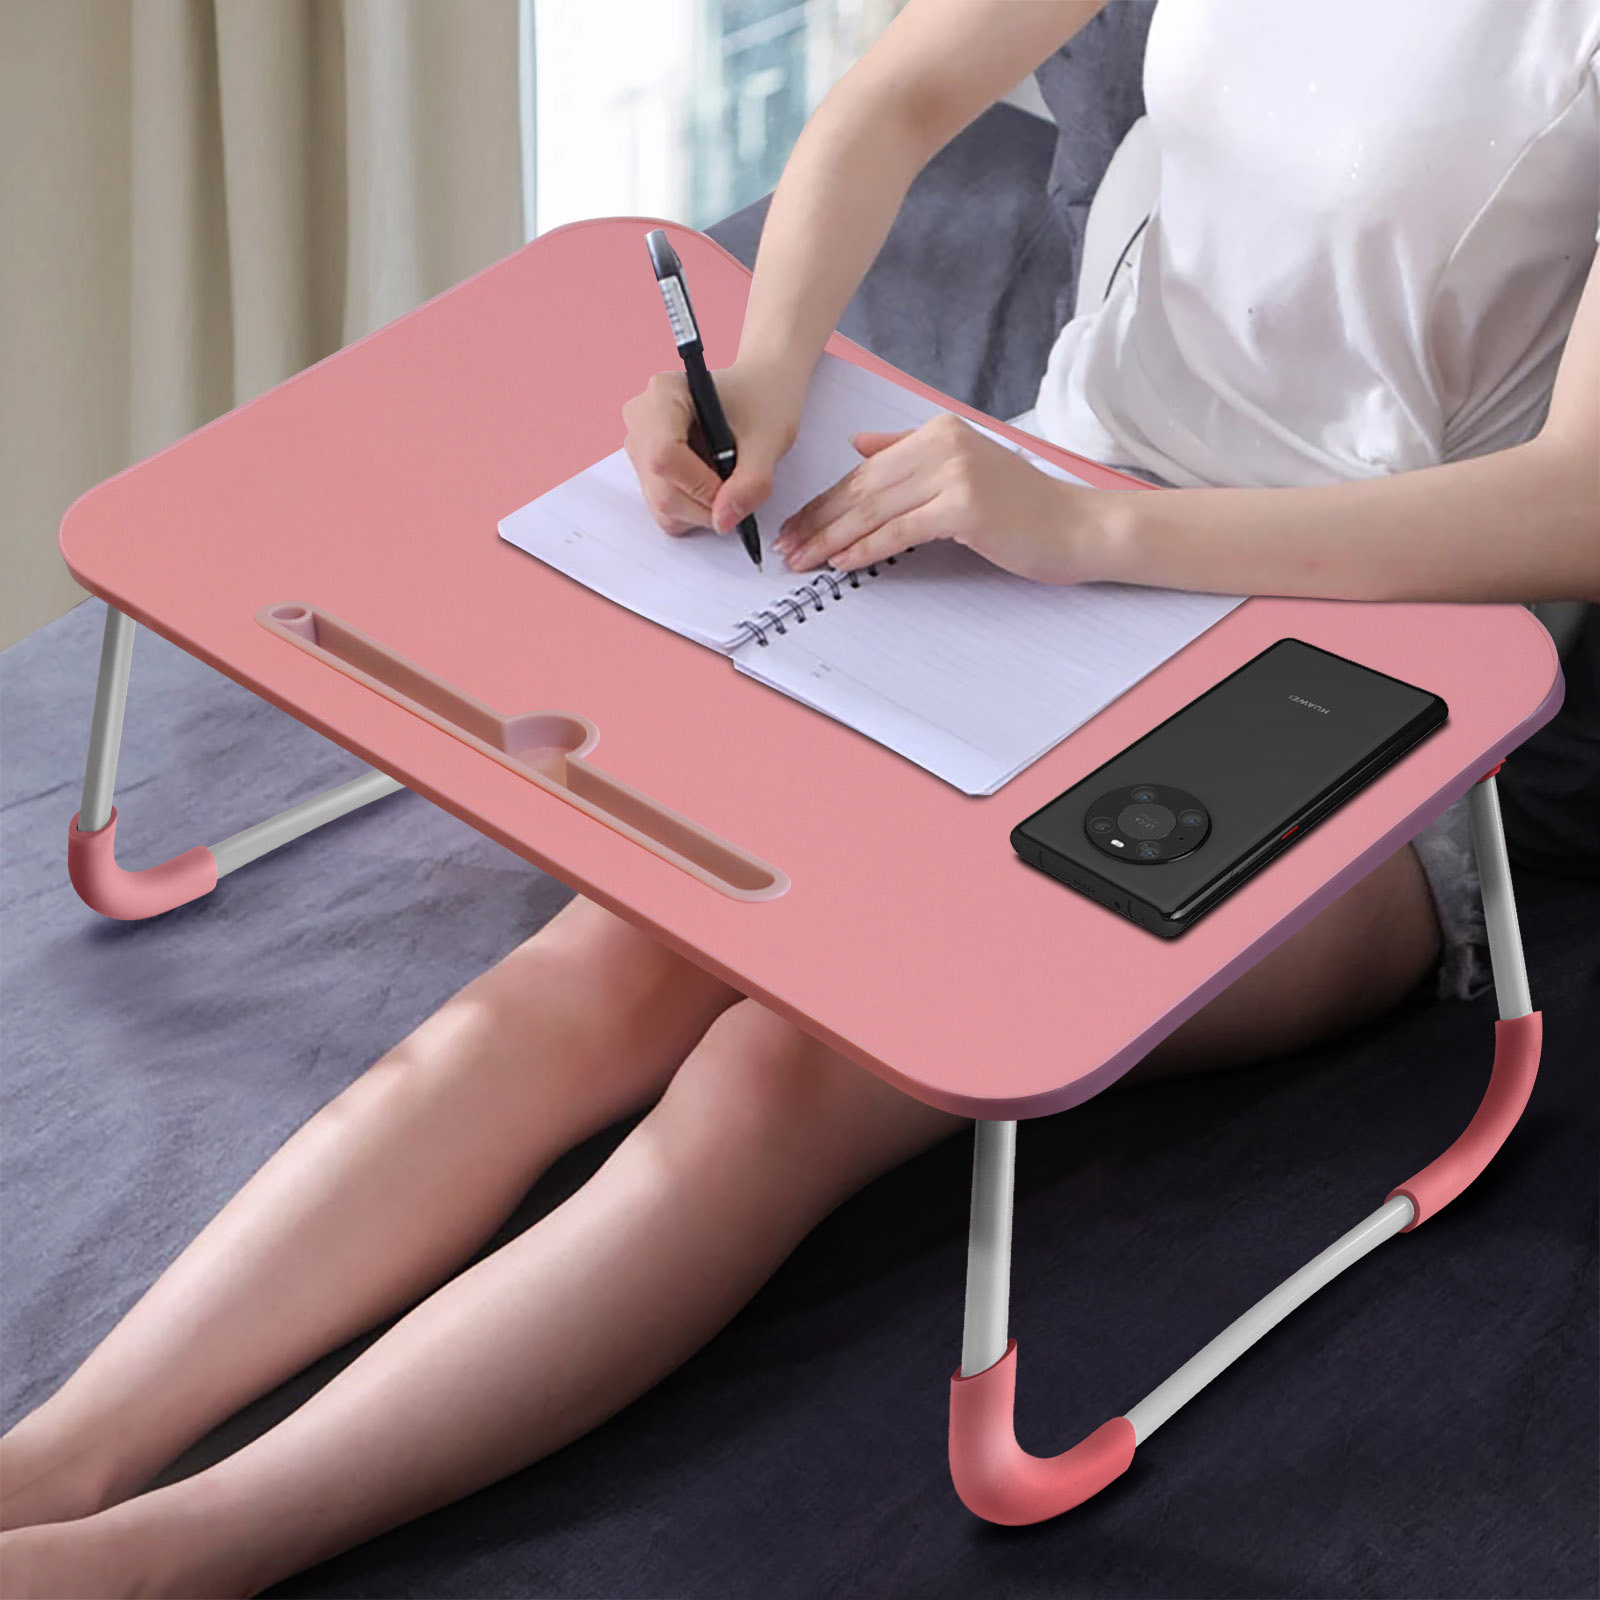 Table pour Ordinateur Portable Lapdesk - Support pour Ordinateur Portable -  Table de lit Pliable pour la Lecture ou Le Petit déjeuner - pour lit et  canapé (60 x 40 cm) en